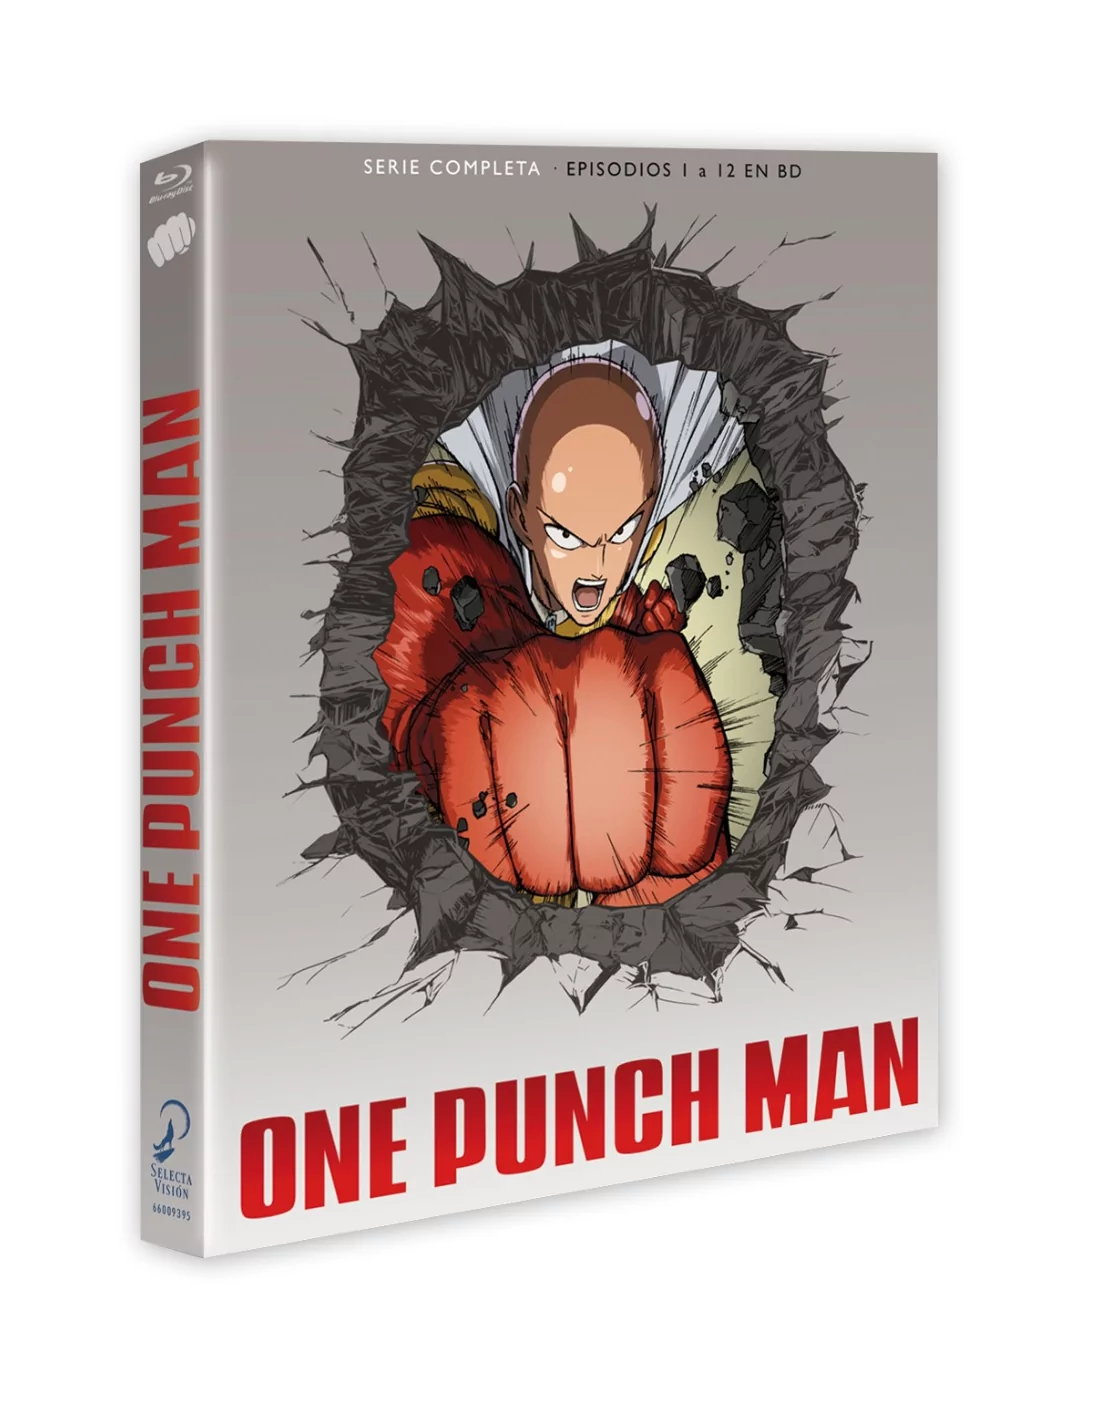 La serie One Punch Man en edición coleccionista Blu-ray